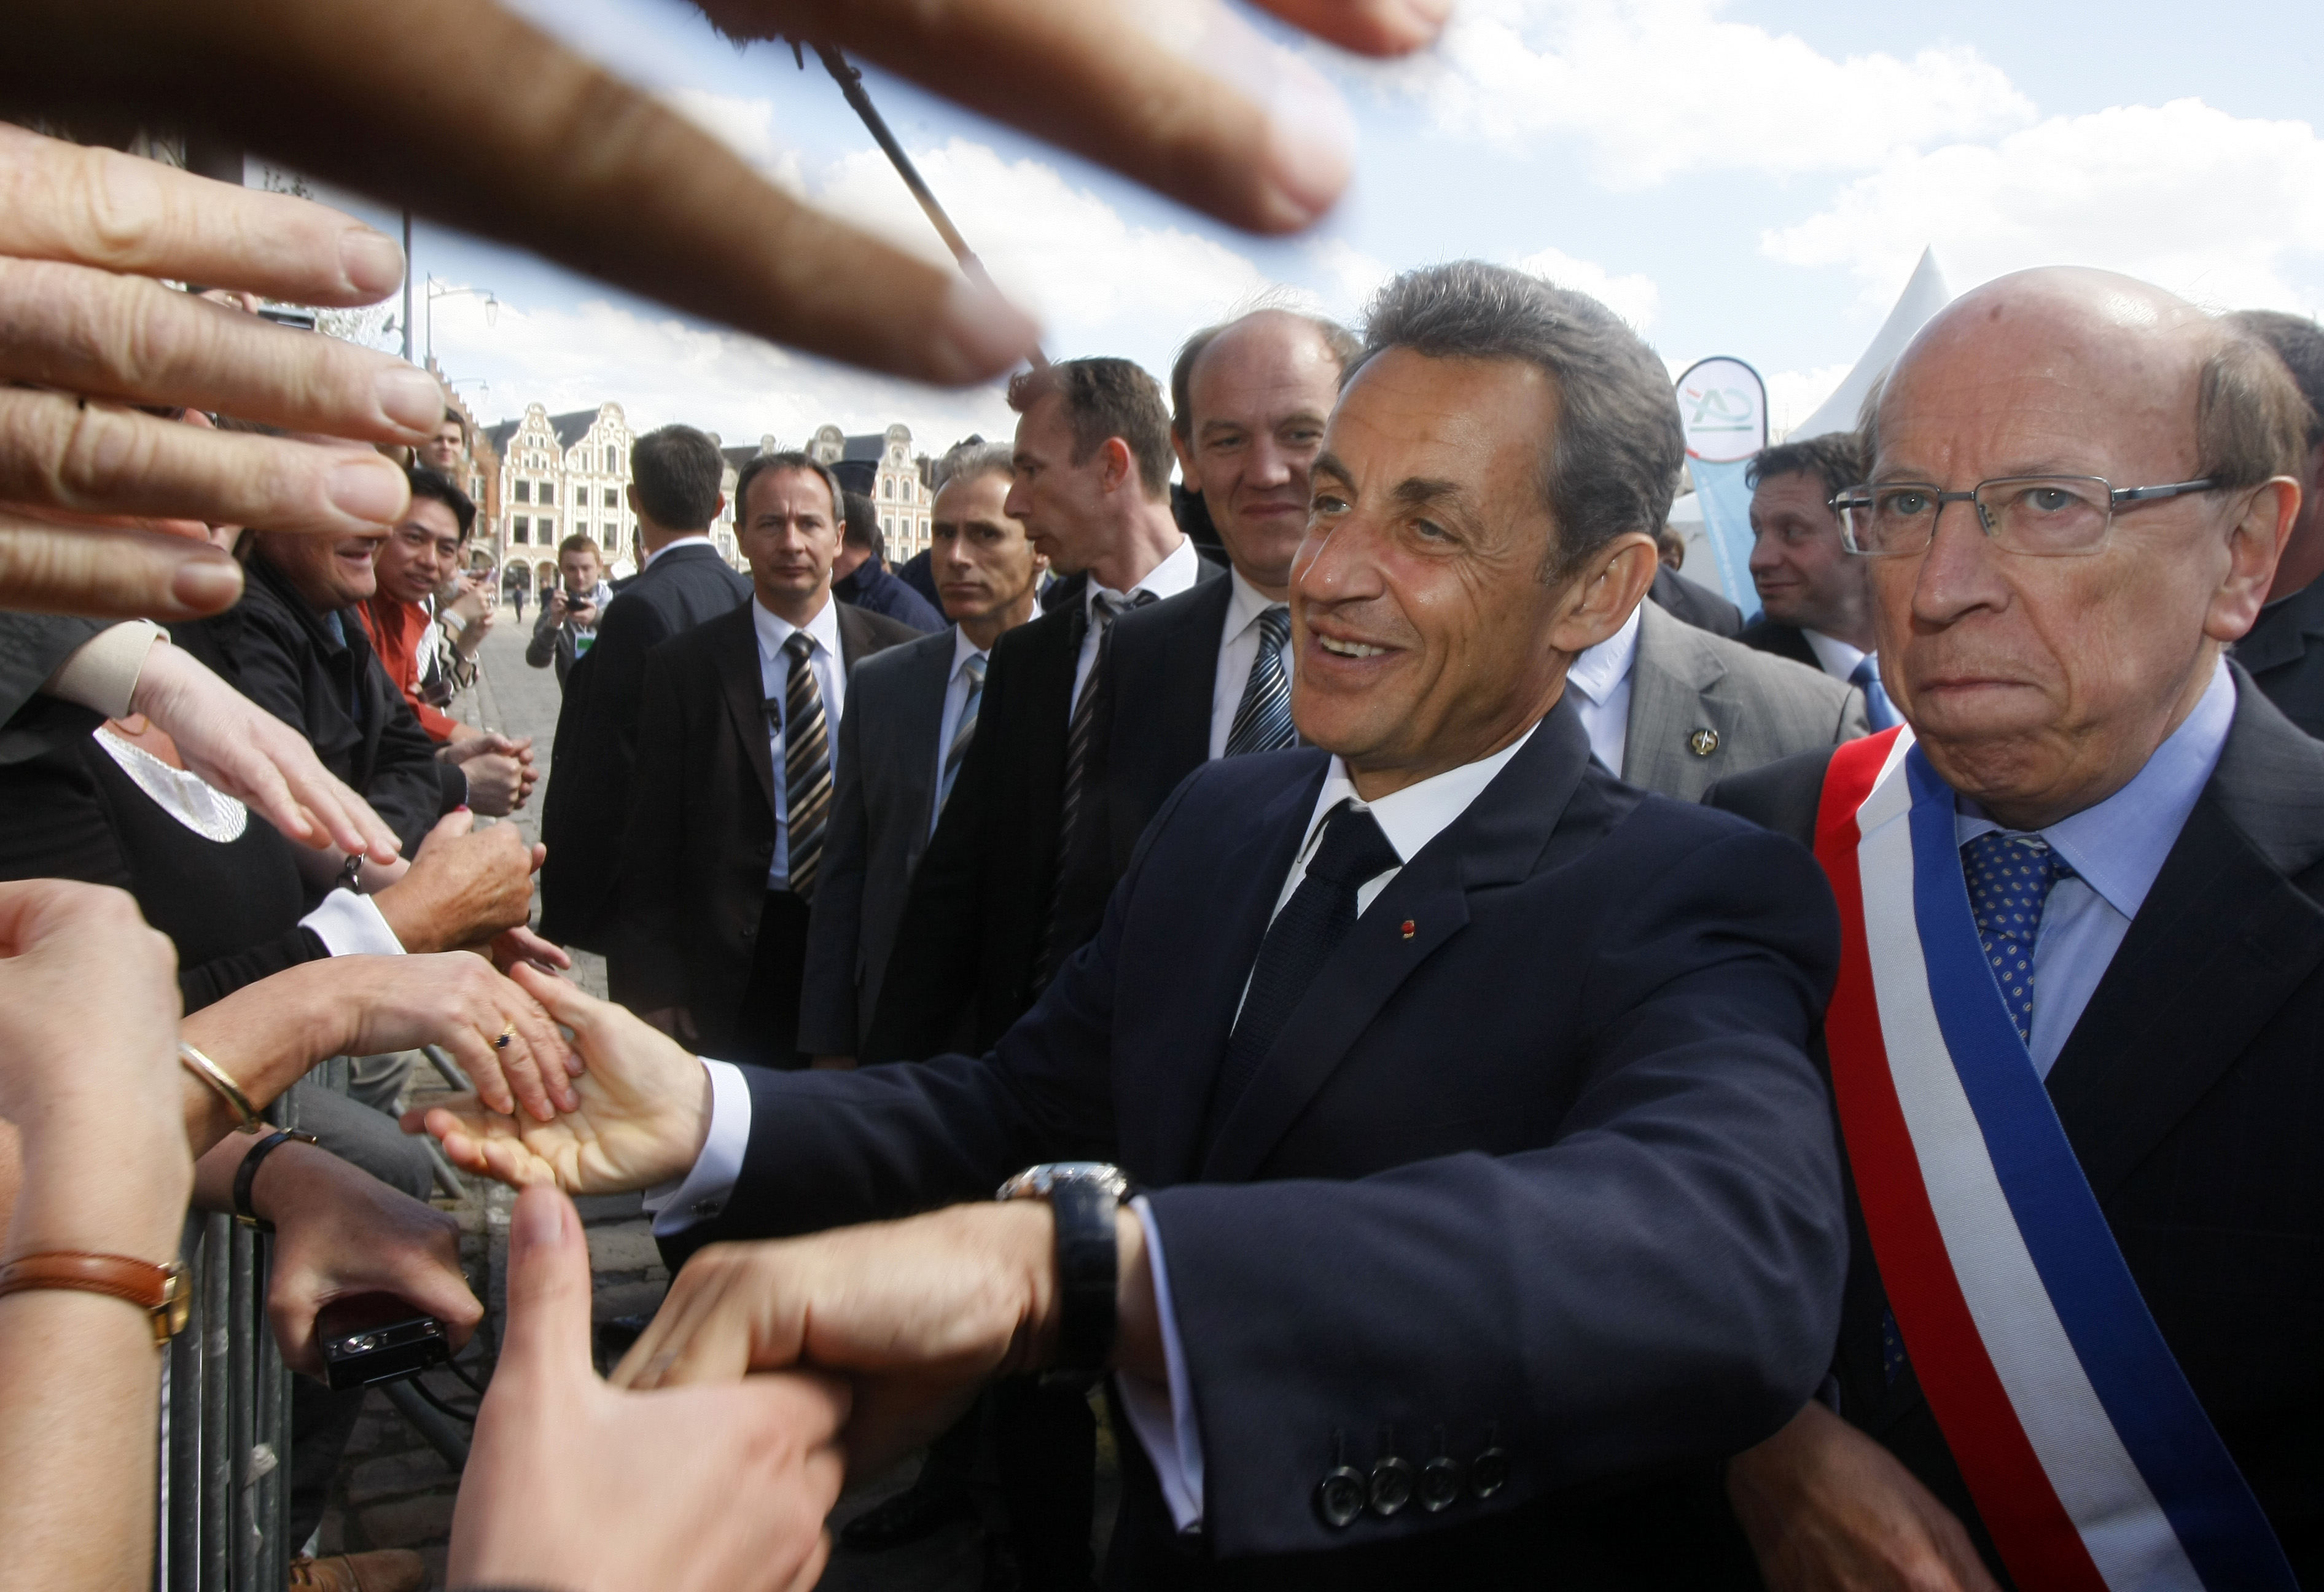 President Sarkozy kan ha fått en livlina inför valet 2012.